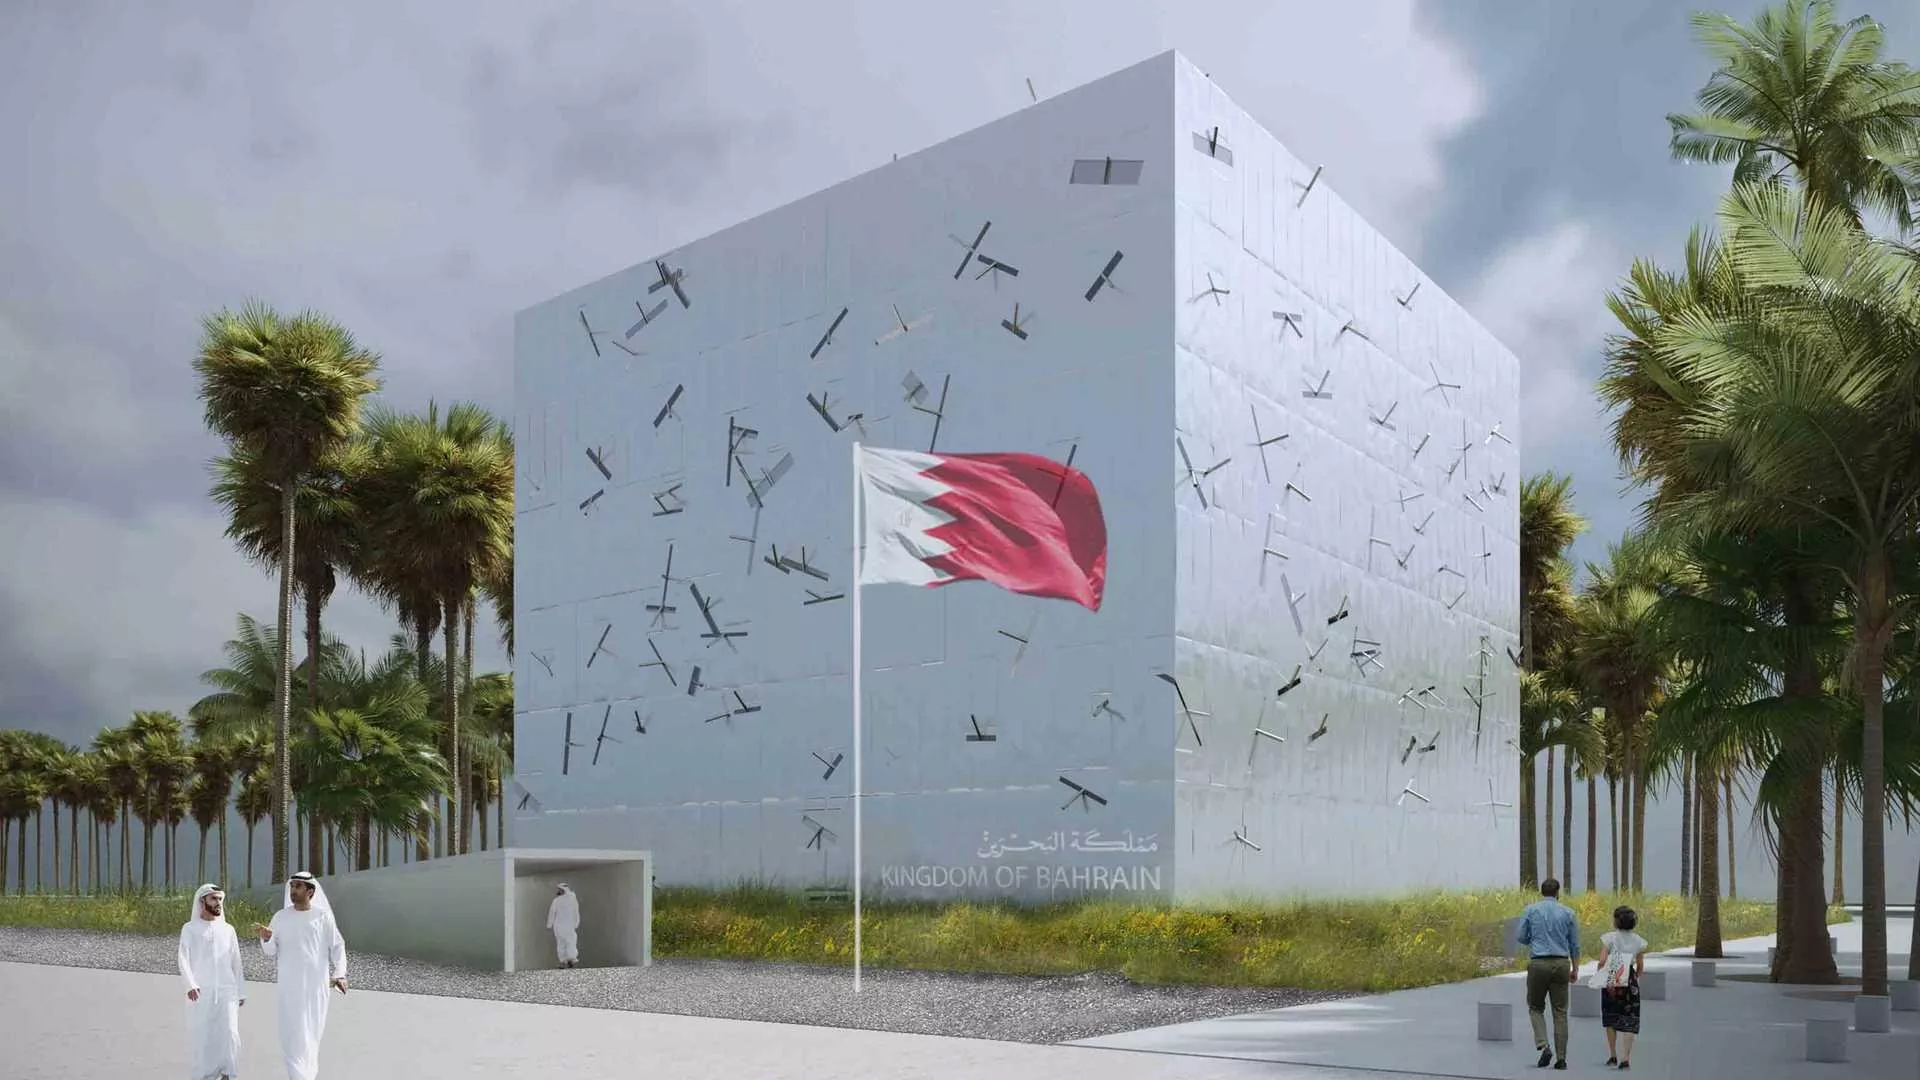 جناح البحرين في اكسبو 2020: يحاكي علاقة المملكة مع البحر والتاريخ